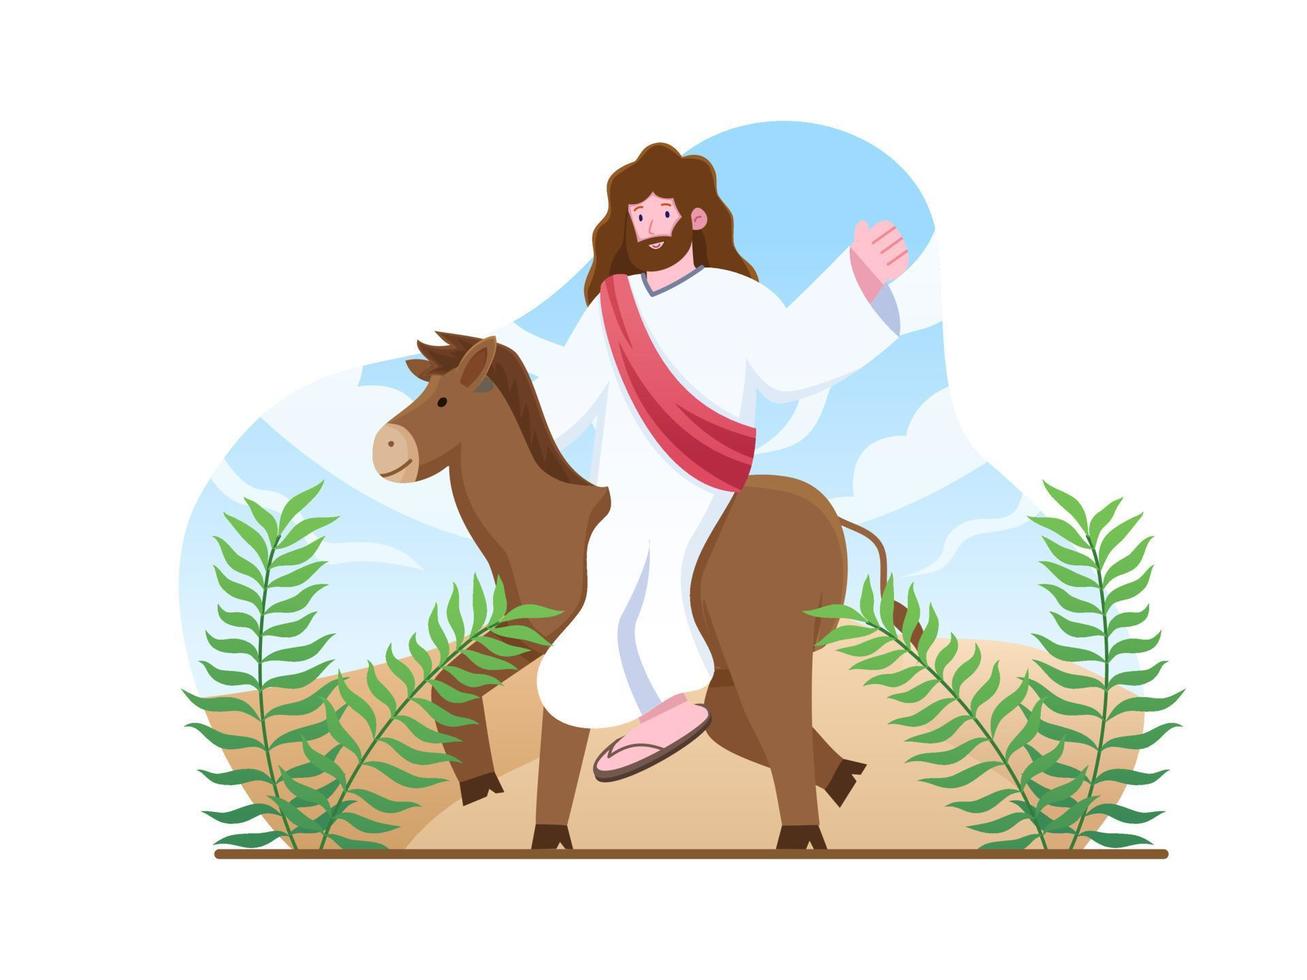 Palmsonntagsillustration - Jesus betritt Jerusalem mit einem Esel und Palmblättern. Menschen grüßen ihn mit Palmzweigen. Abbildung der biblischen Geschichte. Kann für Grußkarten, Postkarten usw. verwendet werden vektor